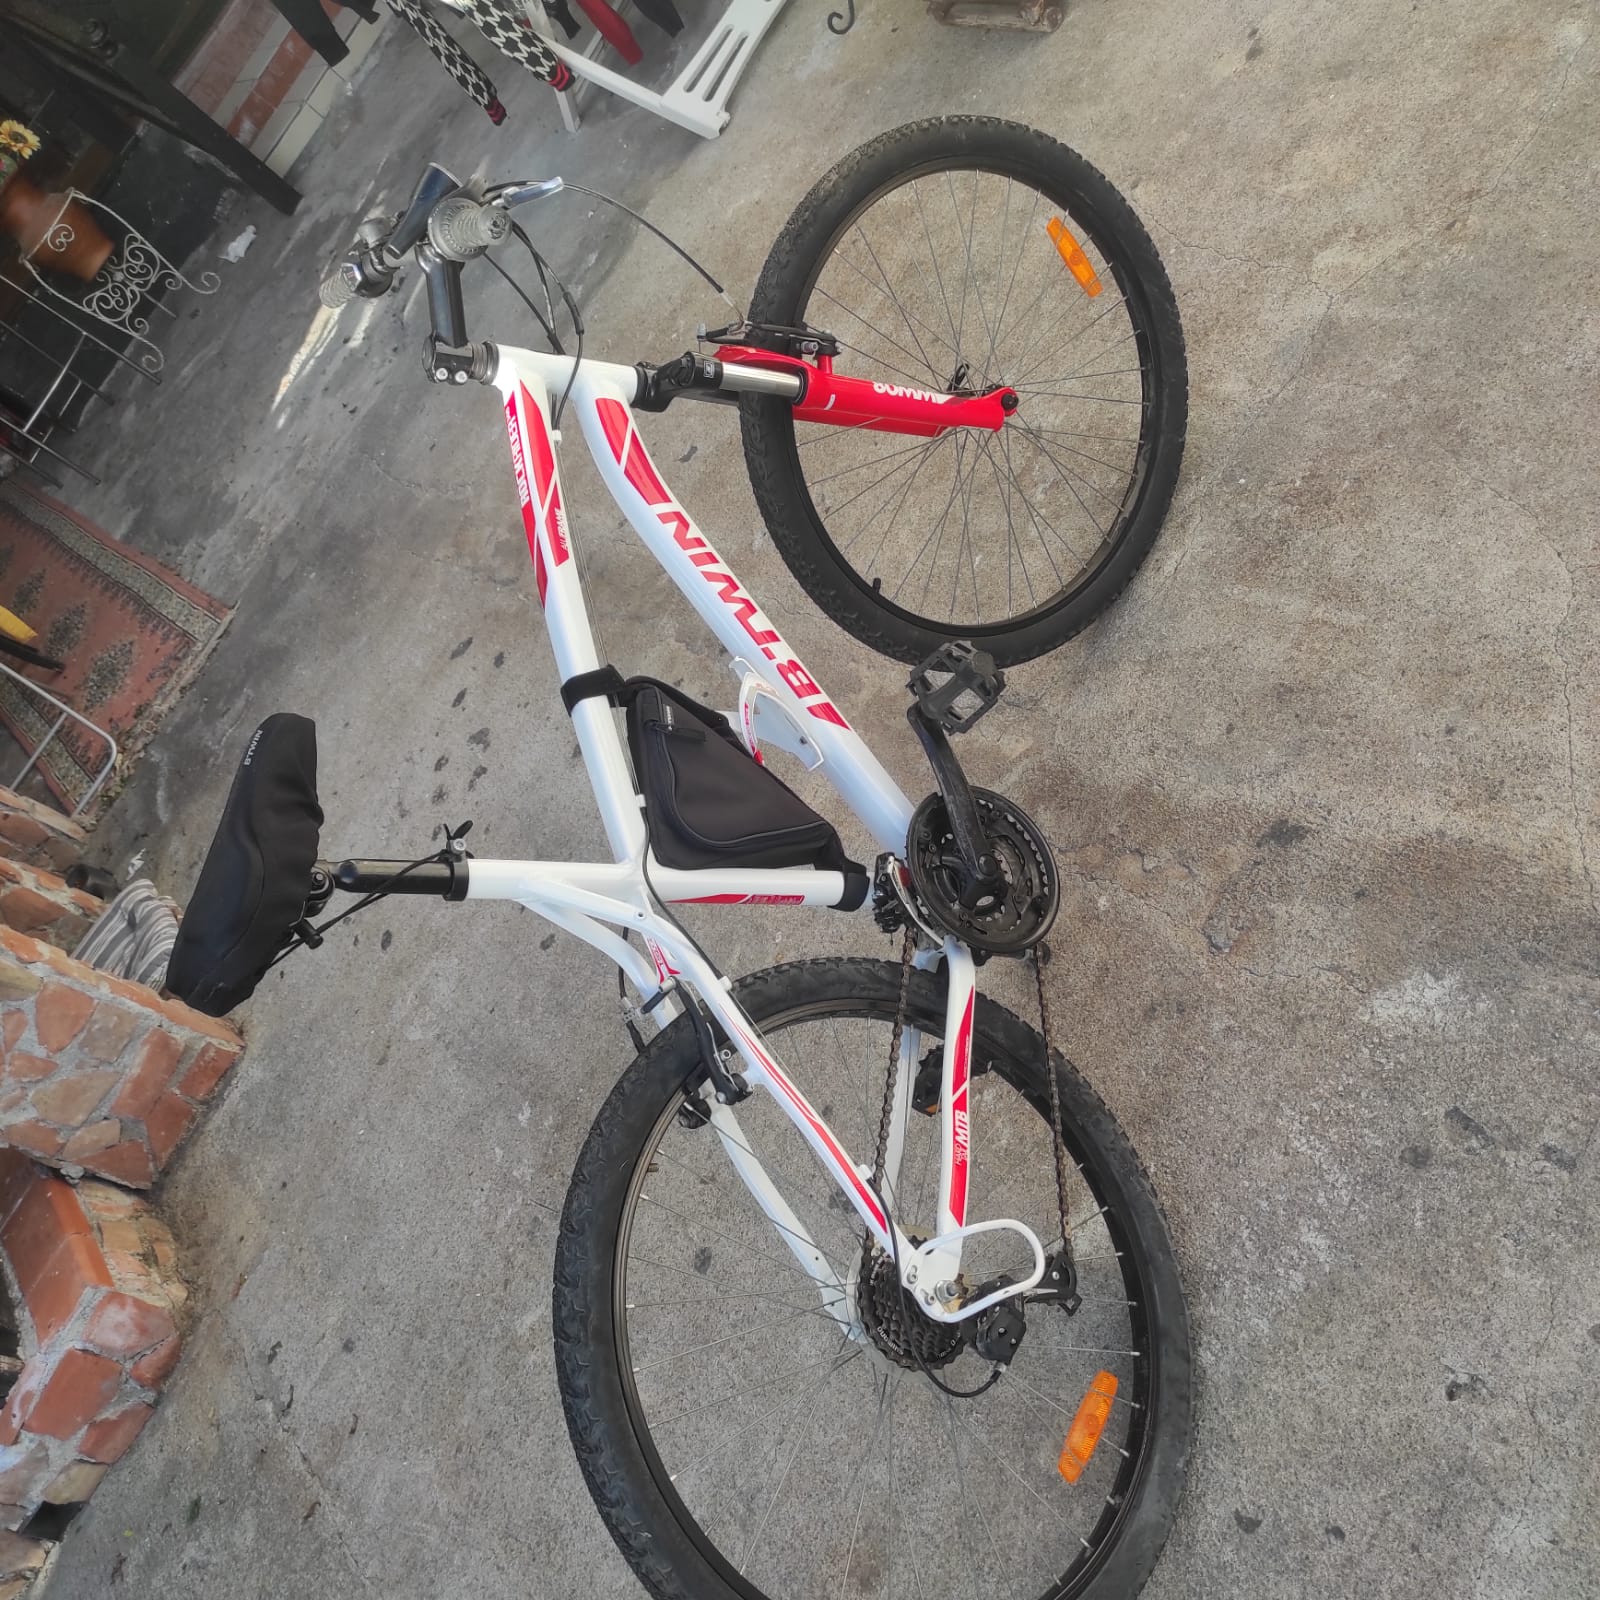 Kip premier Economie B'TWIN Women's 27.5" Mountain Bike ST 120 gebruikt in m | buycycle